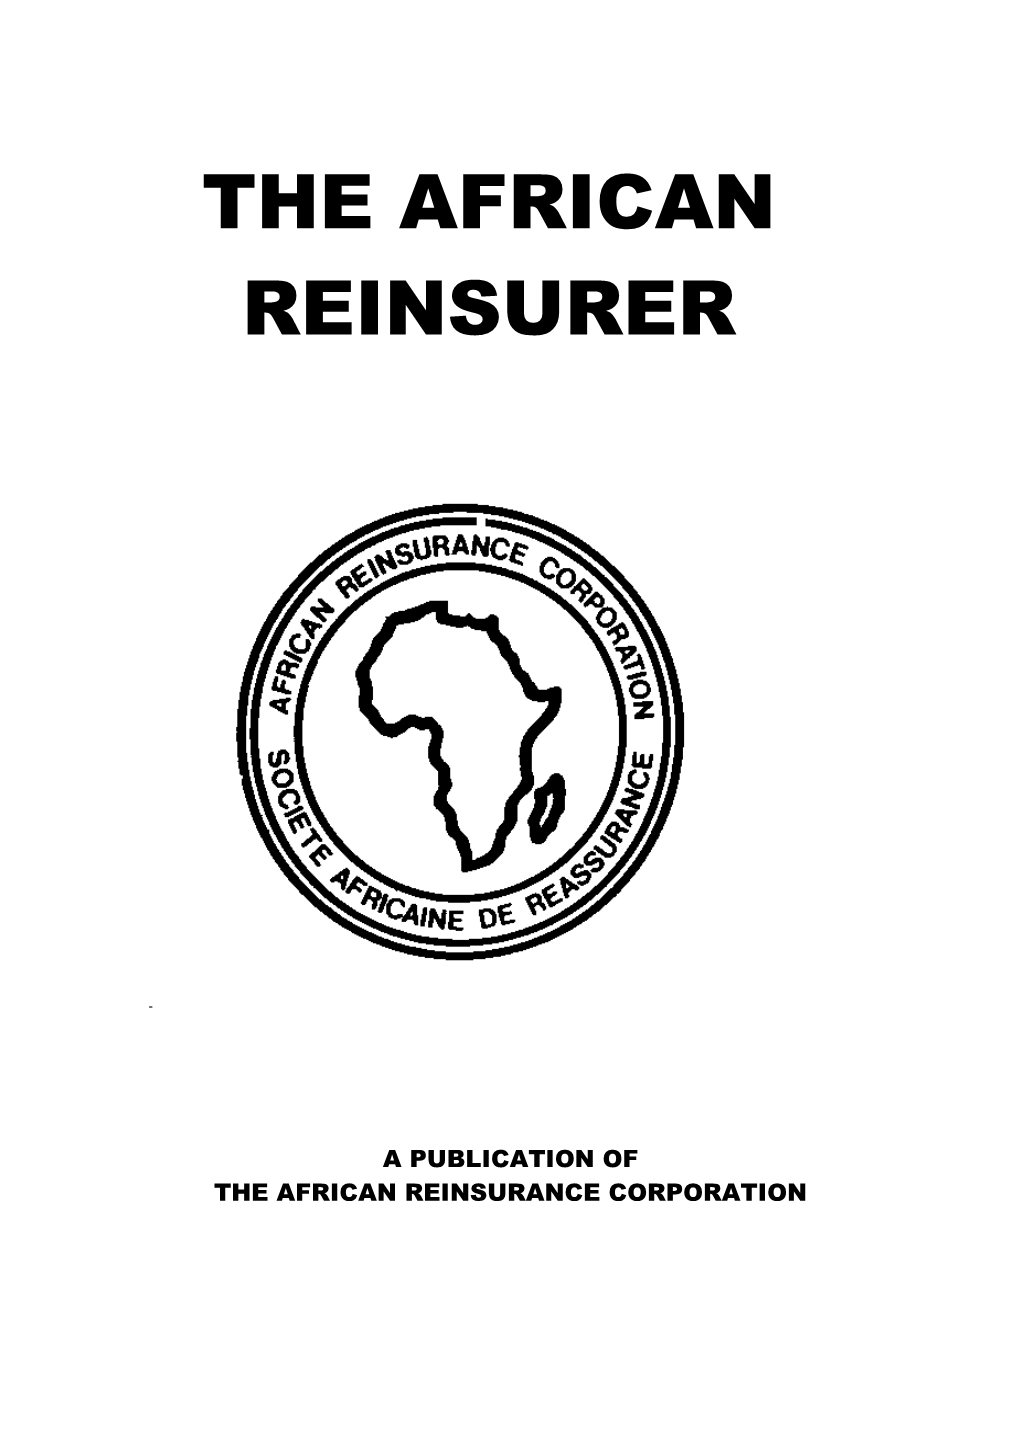 The African Reinsurer